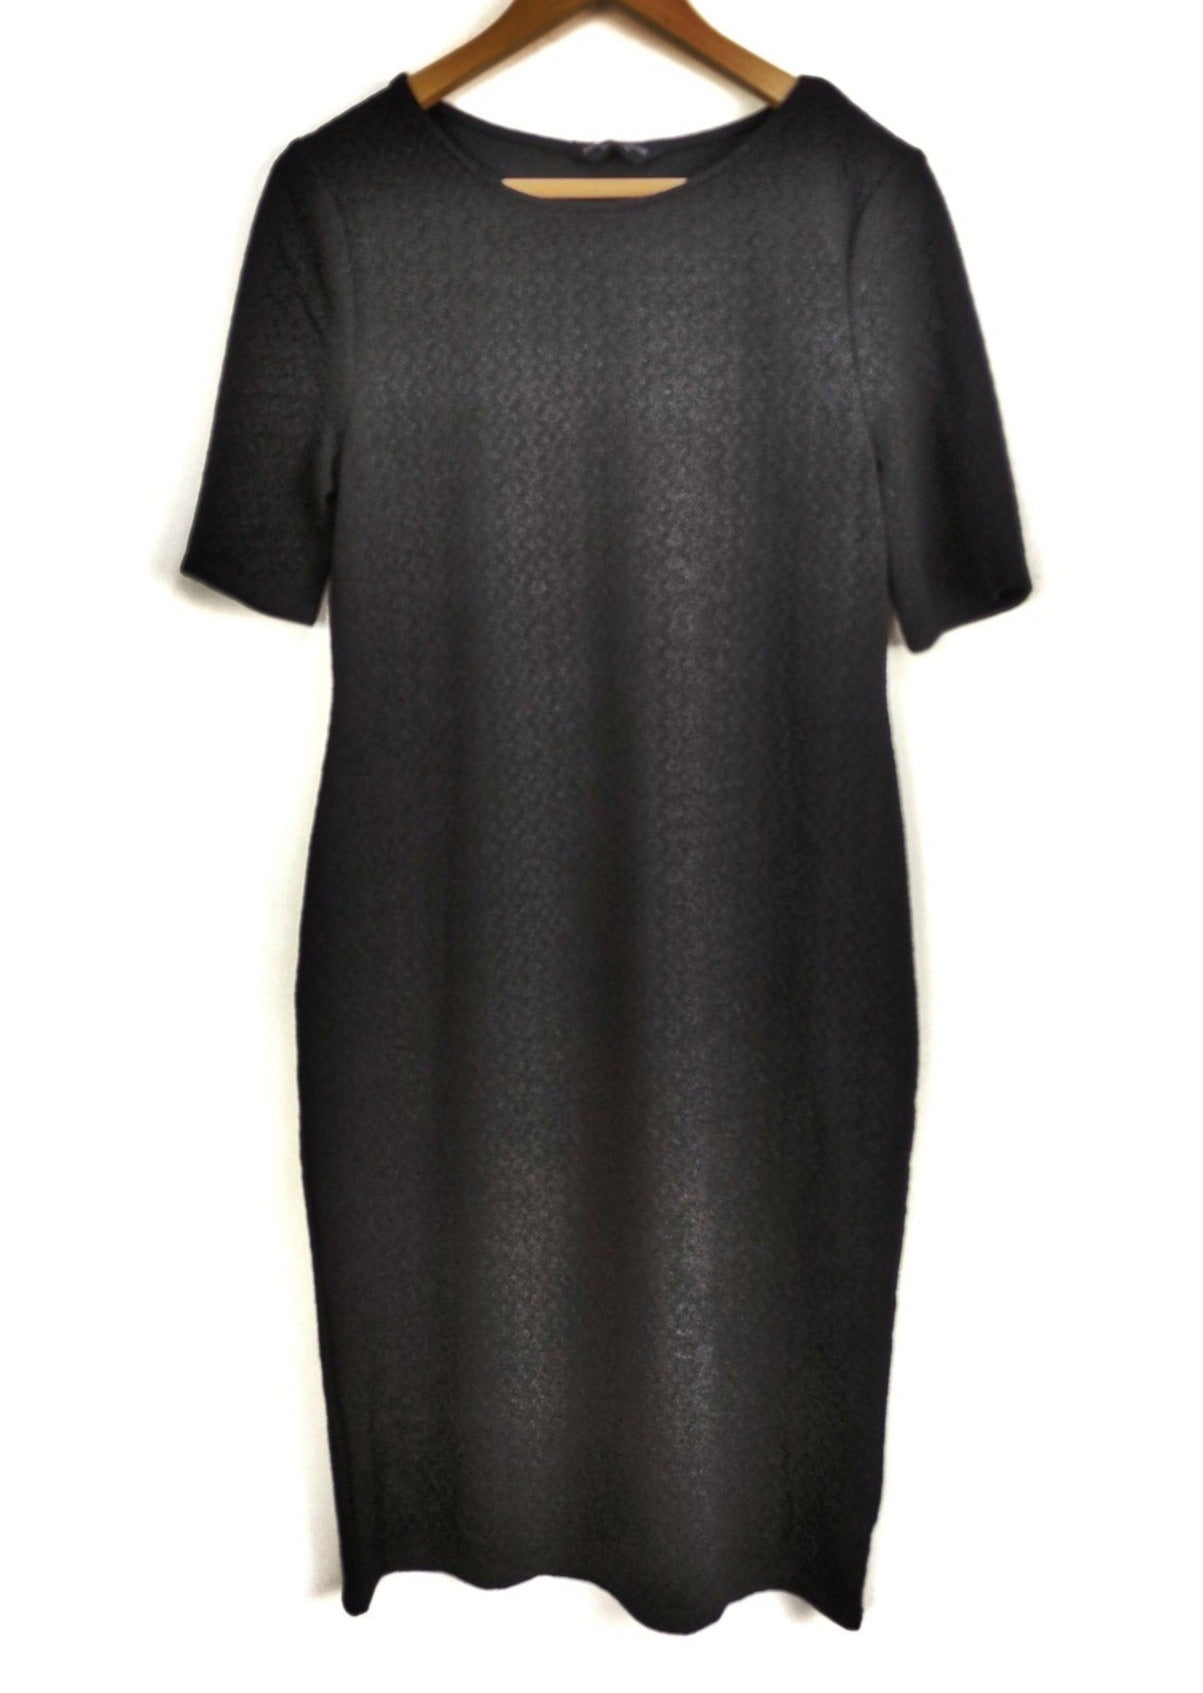 Φόρεμα DOROTHY PERKINS σε Μαύρο Χρώμα και ανάγλυφο σχέδιο (Large)